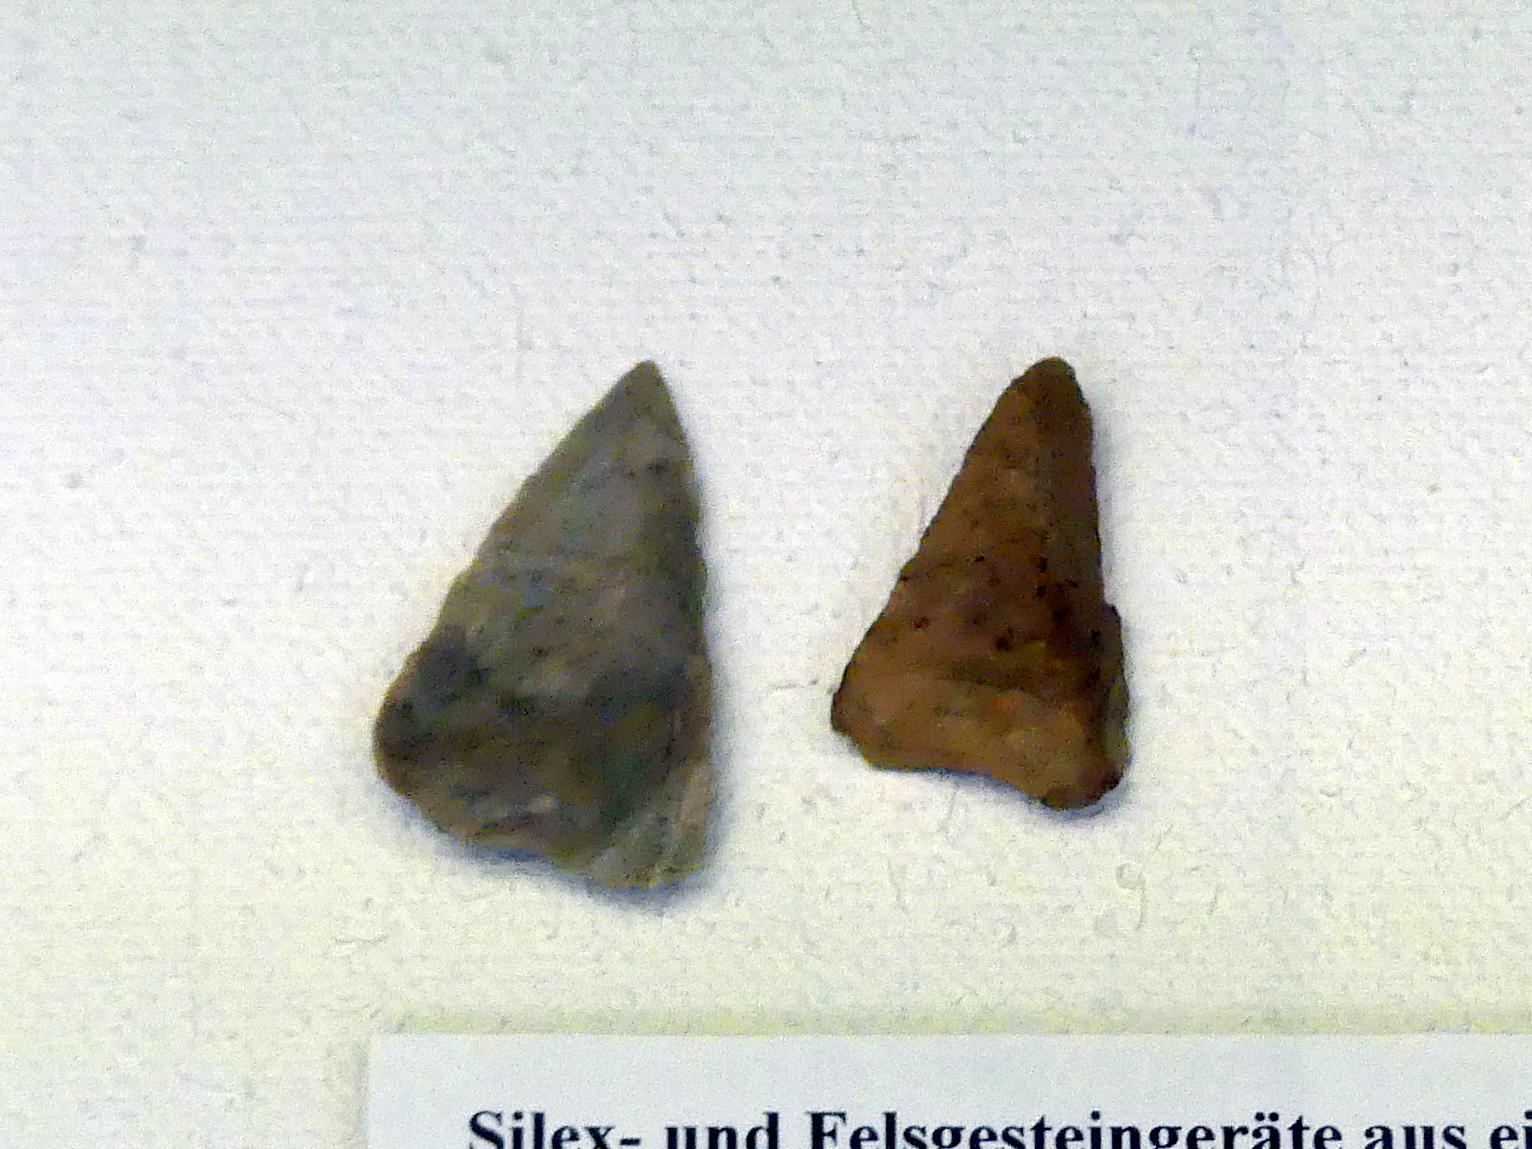 2 Pfeilspitzen, Frühneolithikum (Altneolithikum), 5500 - 4900 v. Chr., Mittelneolithikum, 5500 - 4400 v. Chr., Bild 1/2